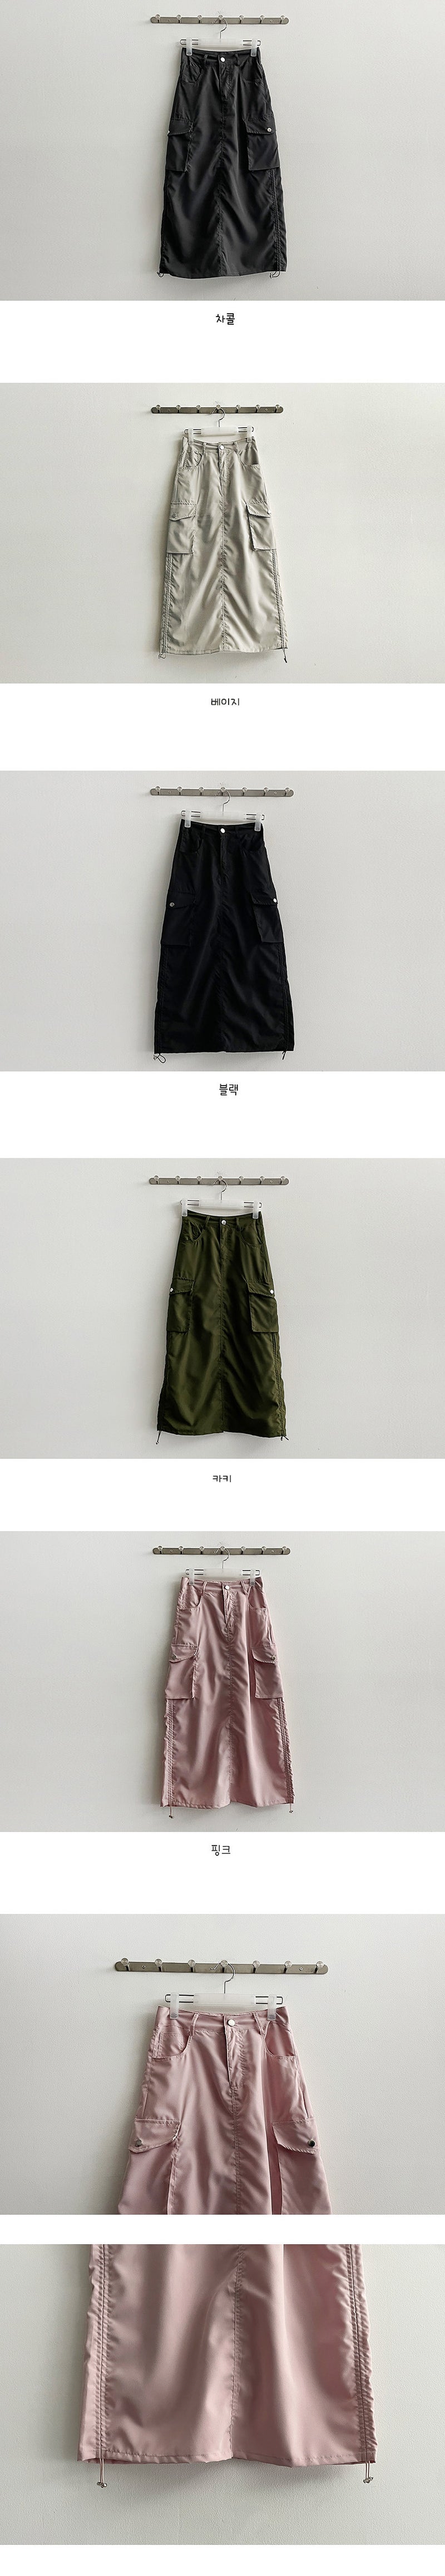 Nefside cargo string long skirt